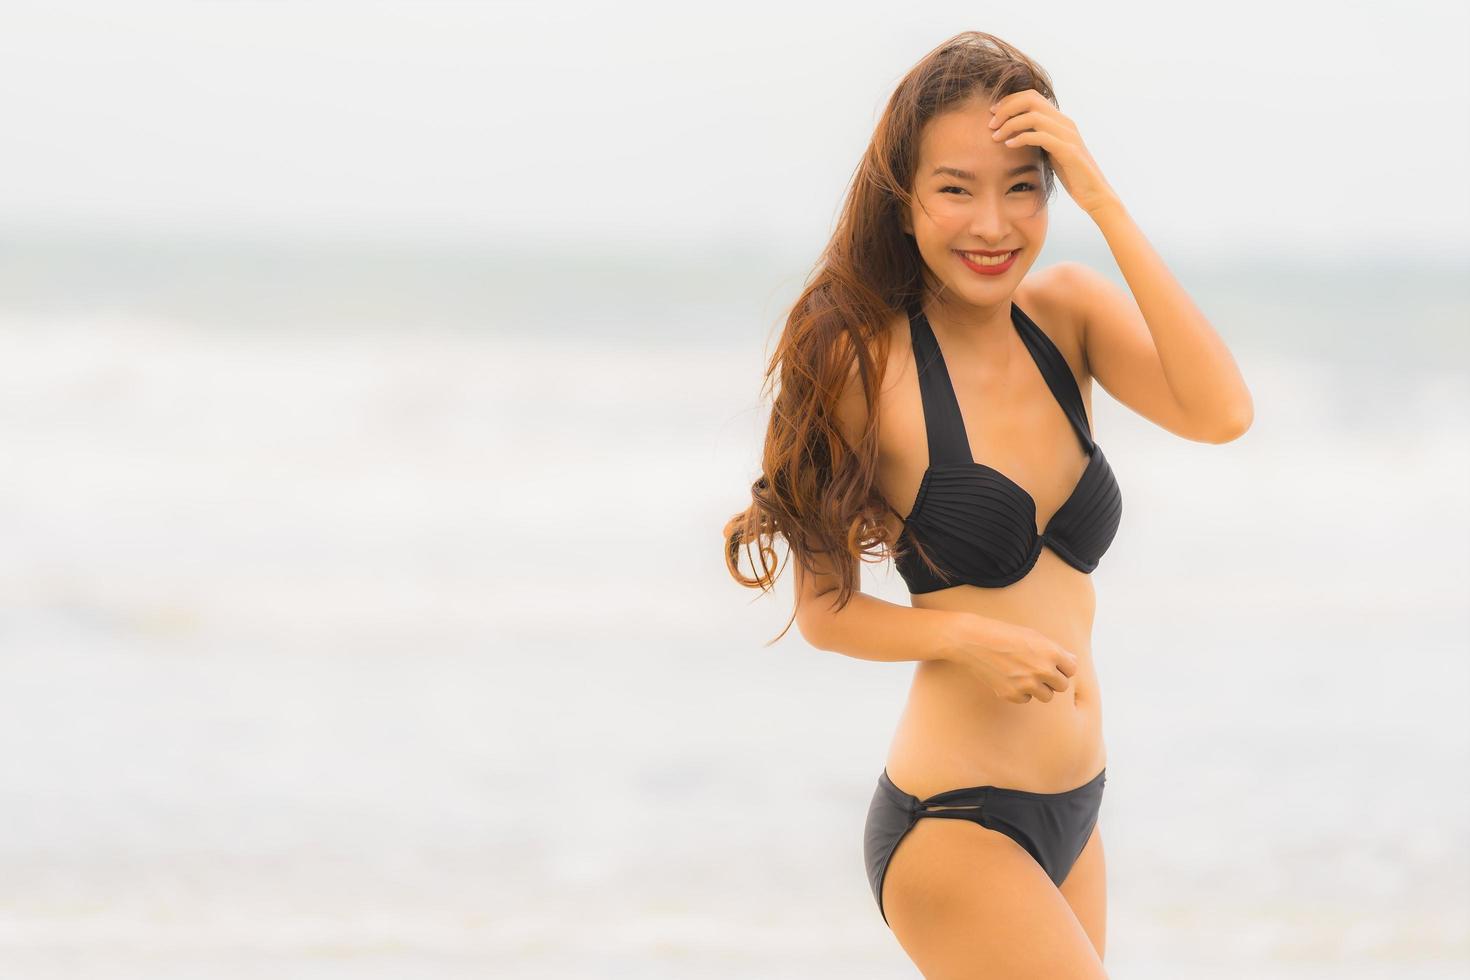 portret mooie jonge aziatische vrouw draagt bikini op het strand zee oceaan foto